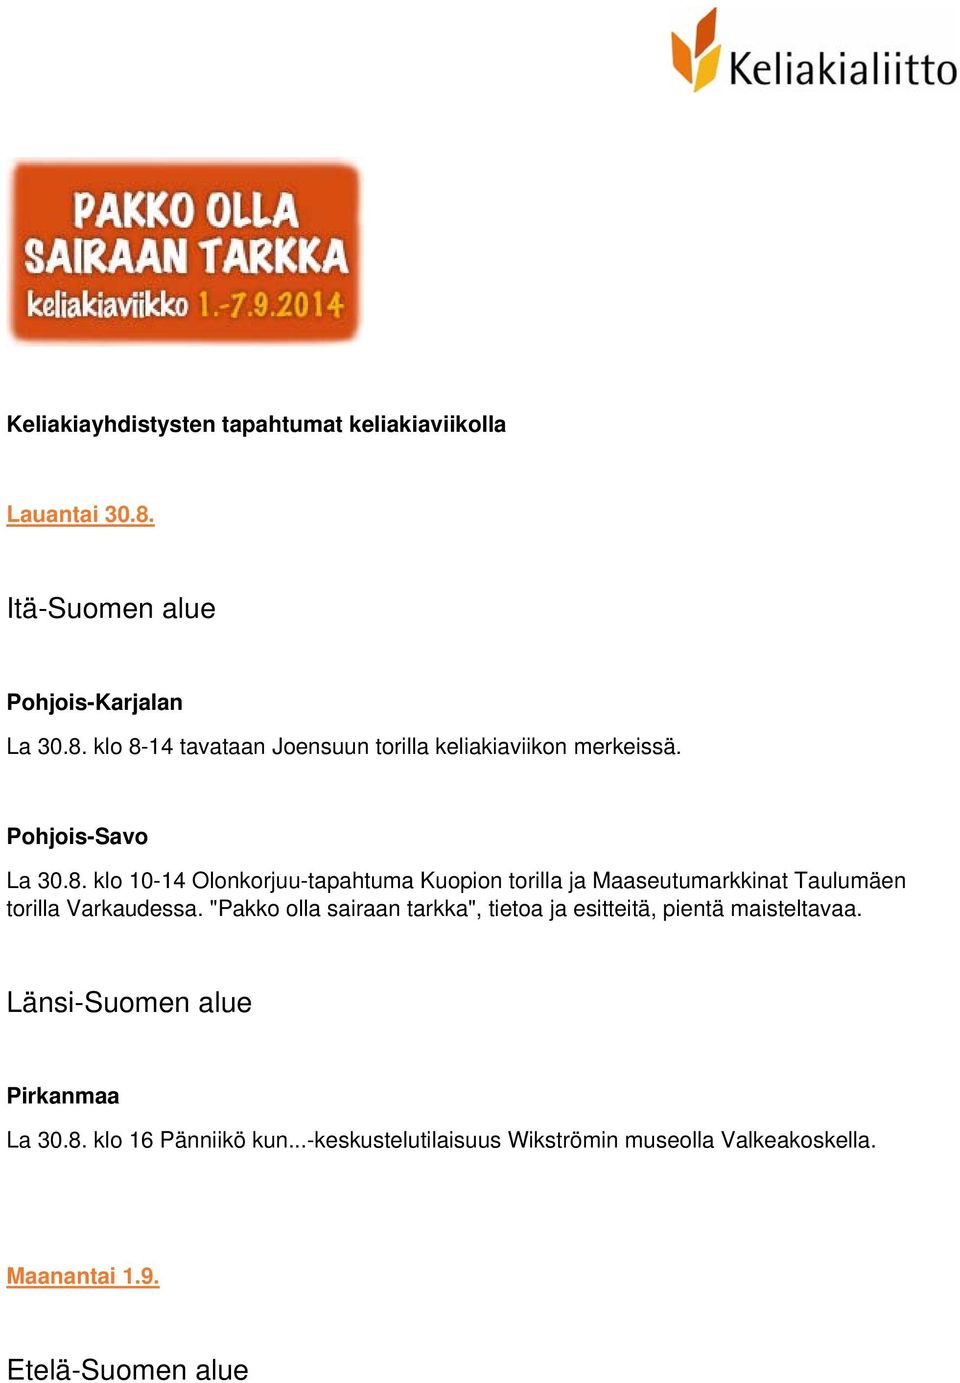 klo 8-14 tavataan Joensuun torilla keliakiaviikon merkeissä. La 30.8. klo 10-14 Olonkorjuu-tapahtuma Kuopion torilla ja Maaseutumarkkinat Taulumäen torilla Varkaudessa.